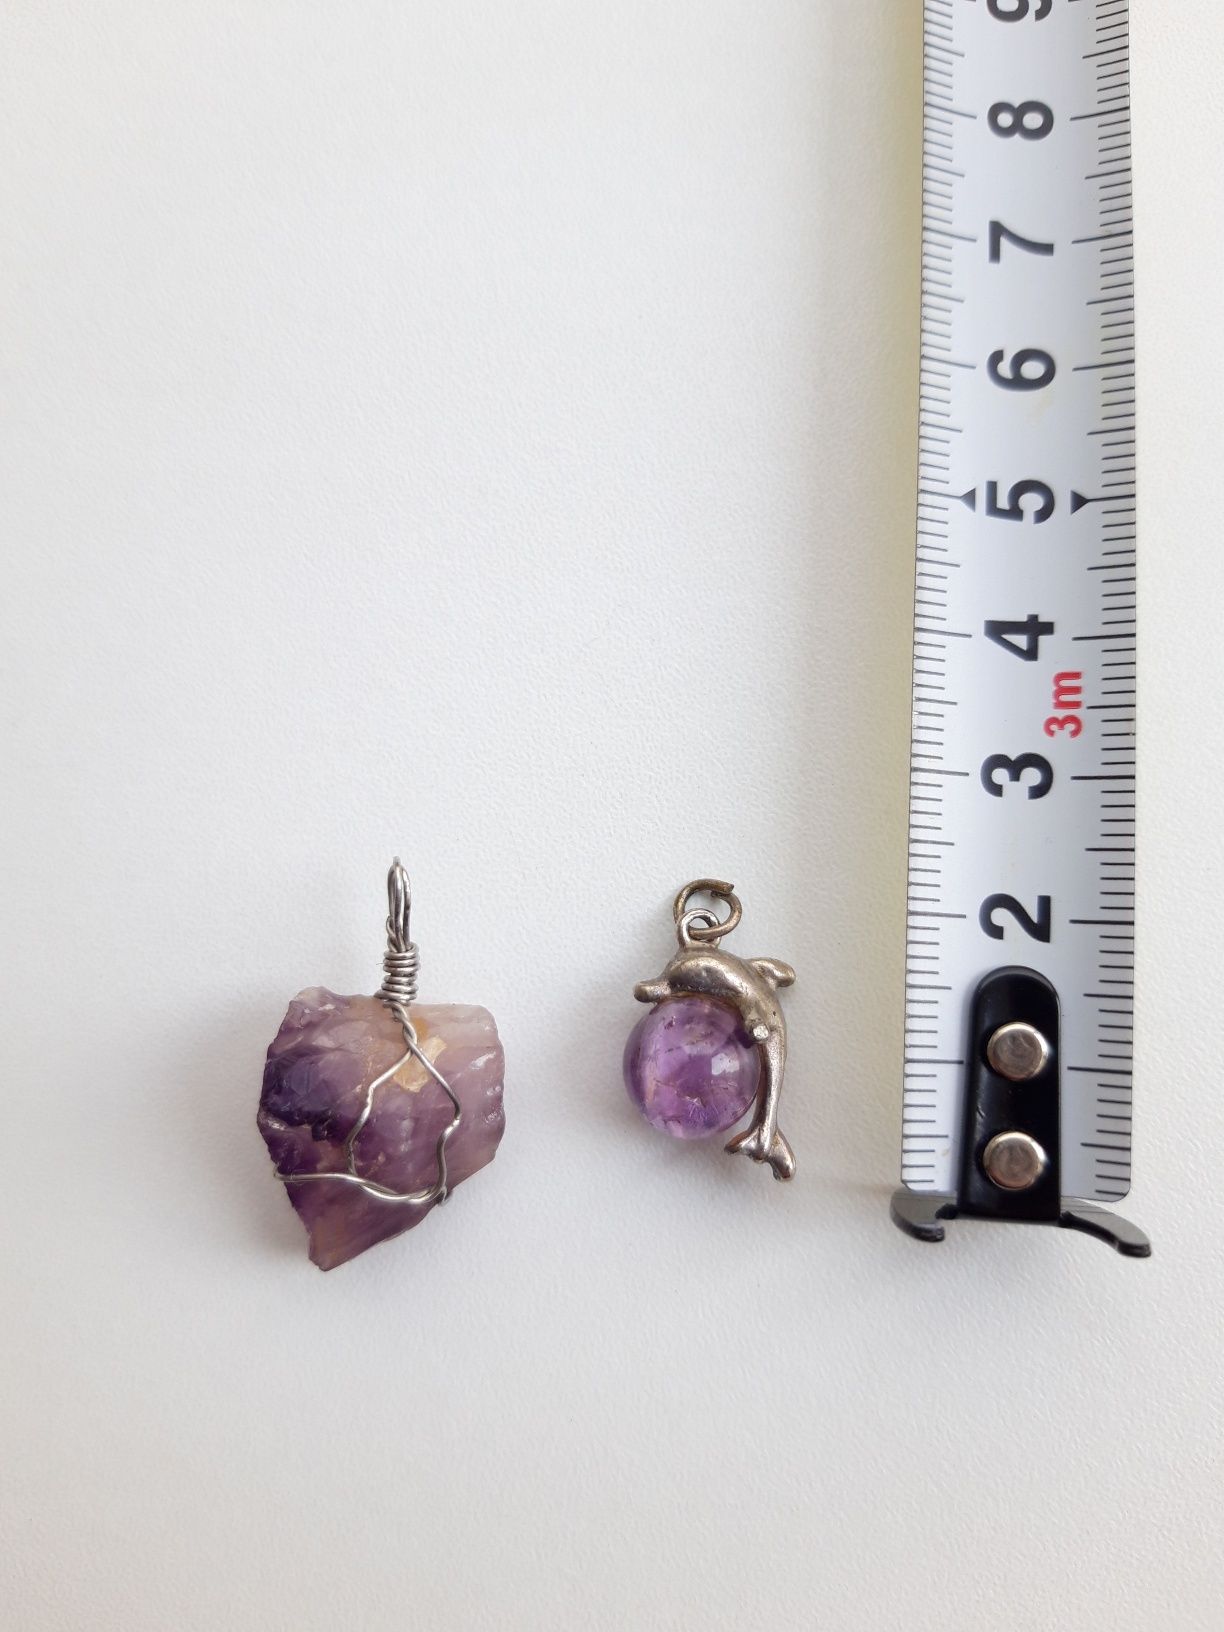 2 pendentes de ametista (roxos) para colar: golfinho + pedra